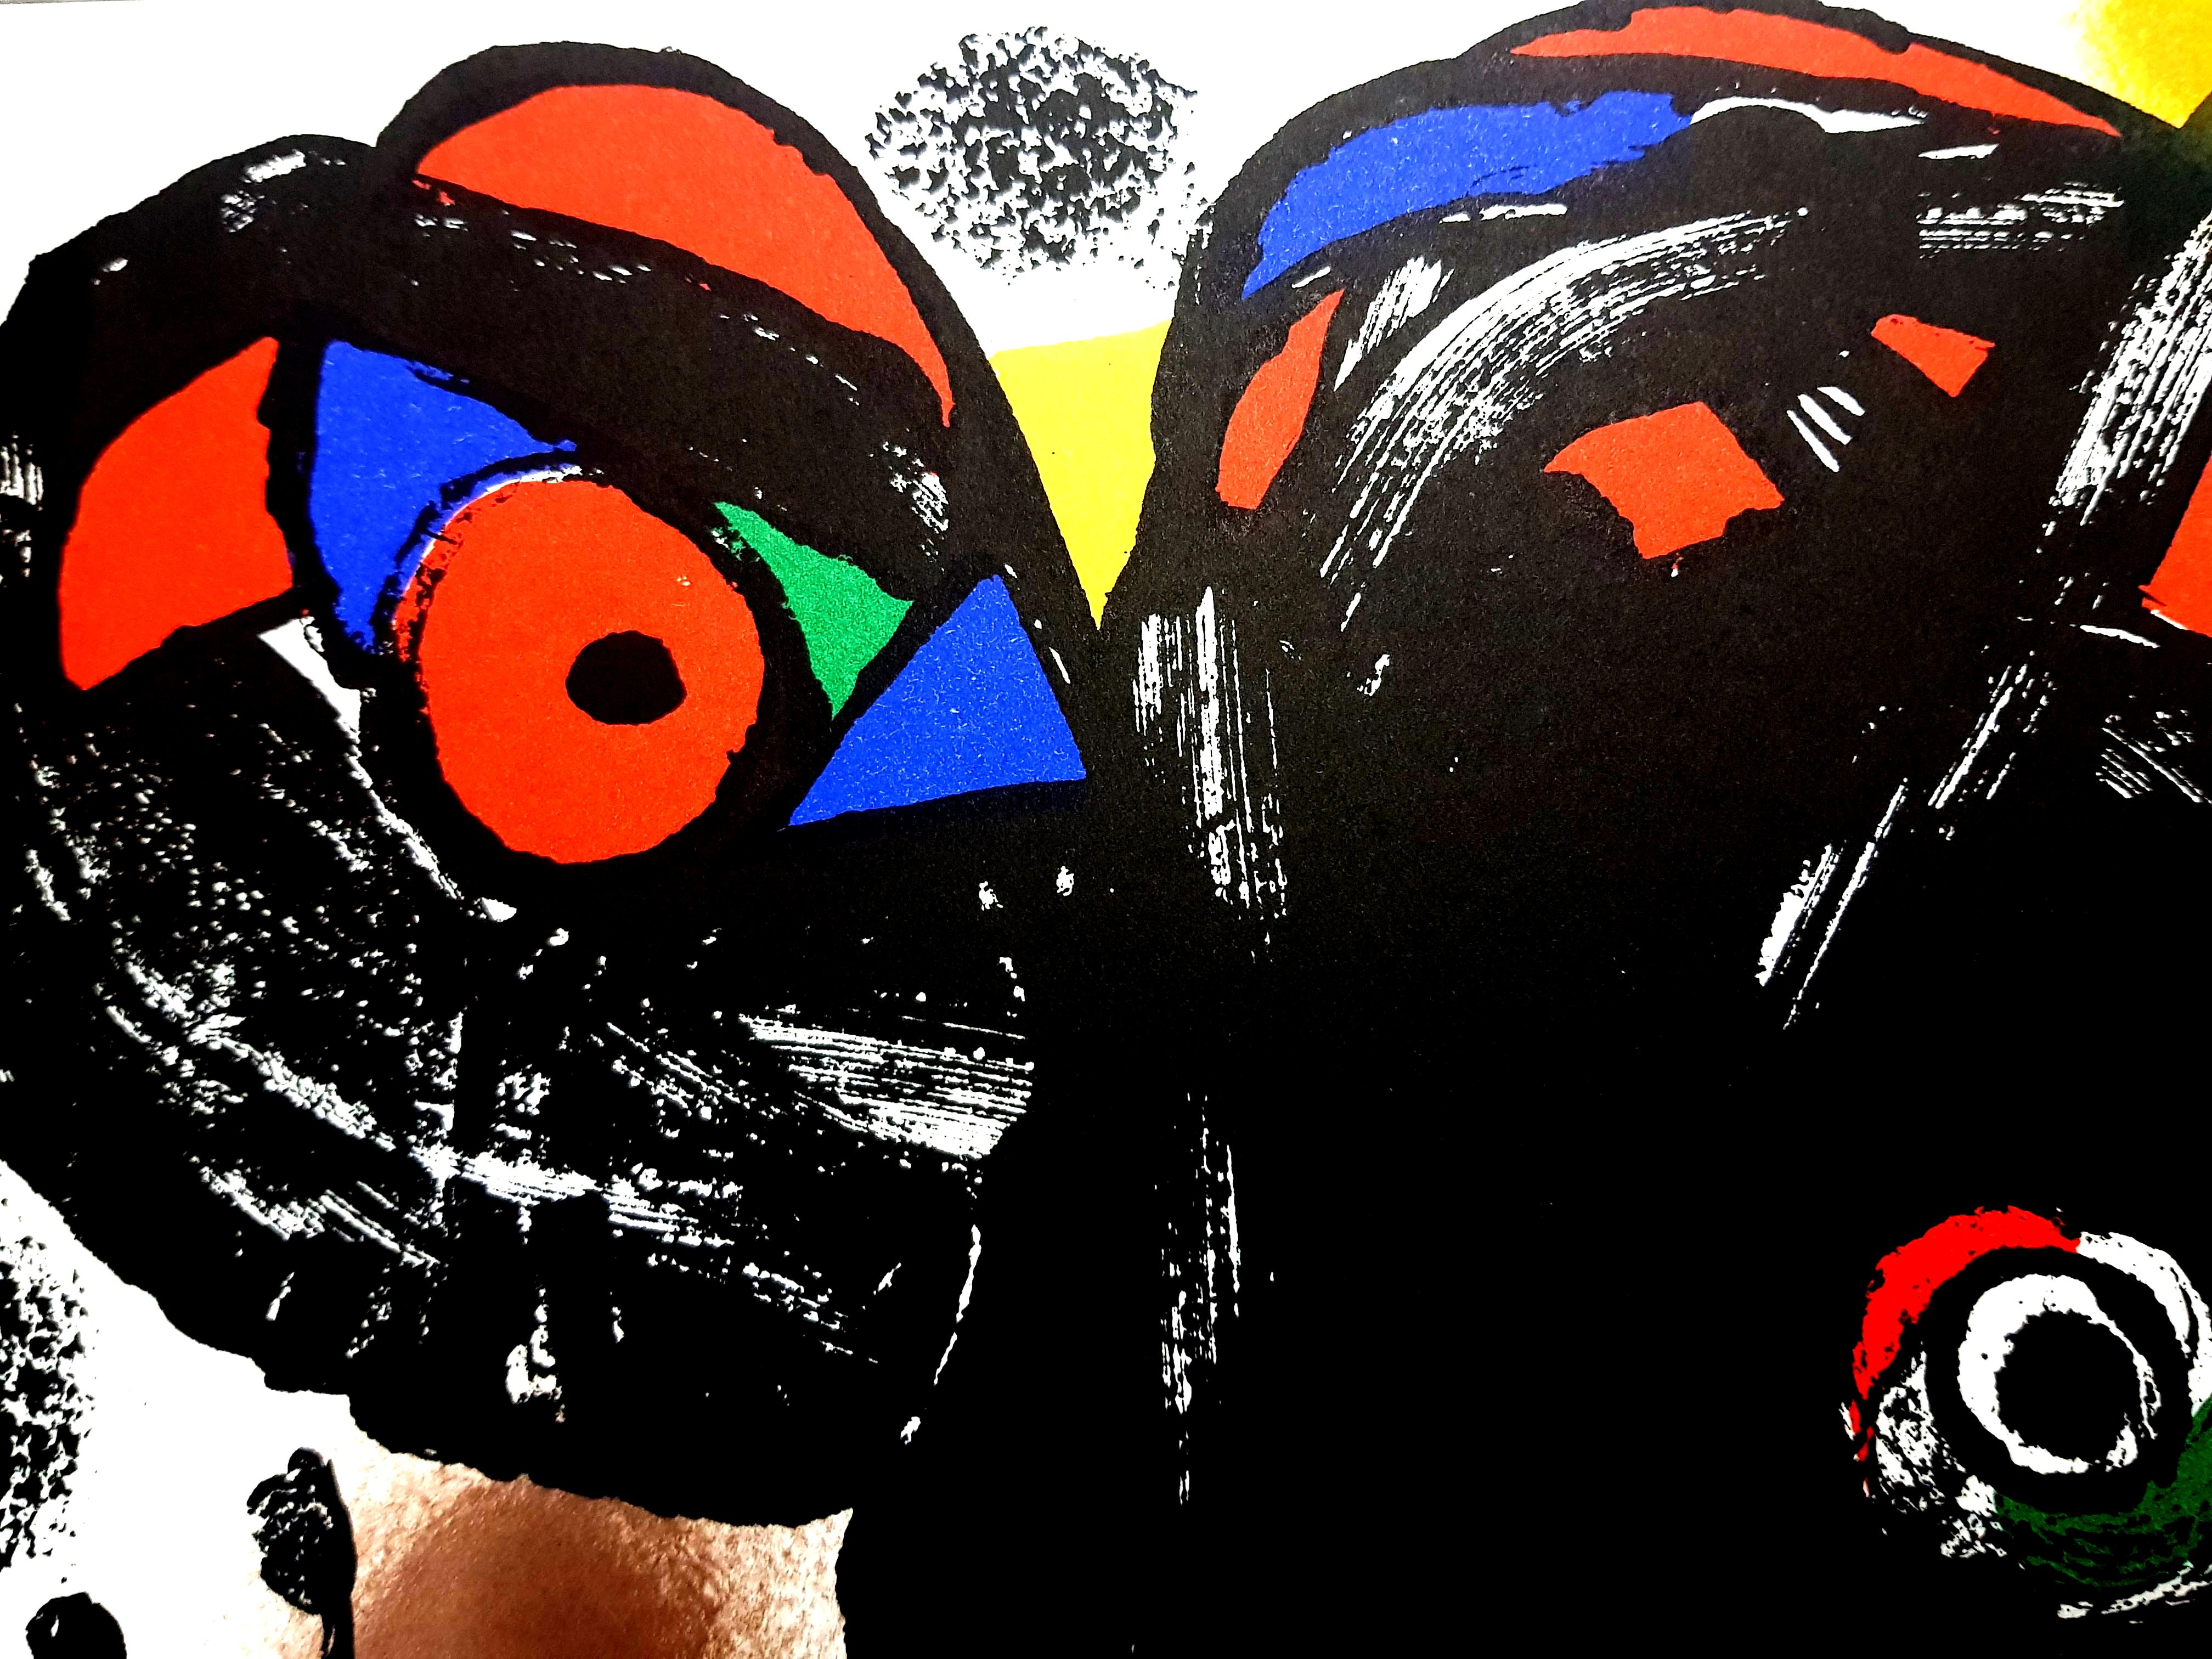 Joan Miro - Lithographie originale
1976
Dimensions : 32 x 25 cm
Revue XXe Siècle 
Référence : Mourlot 1106
Edition : Cahiers d'art publiés sous la direction de G. di San Lazzaro.
Non signé et non numéroté tel que publié